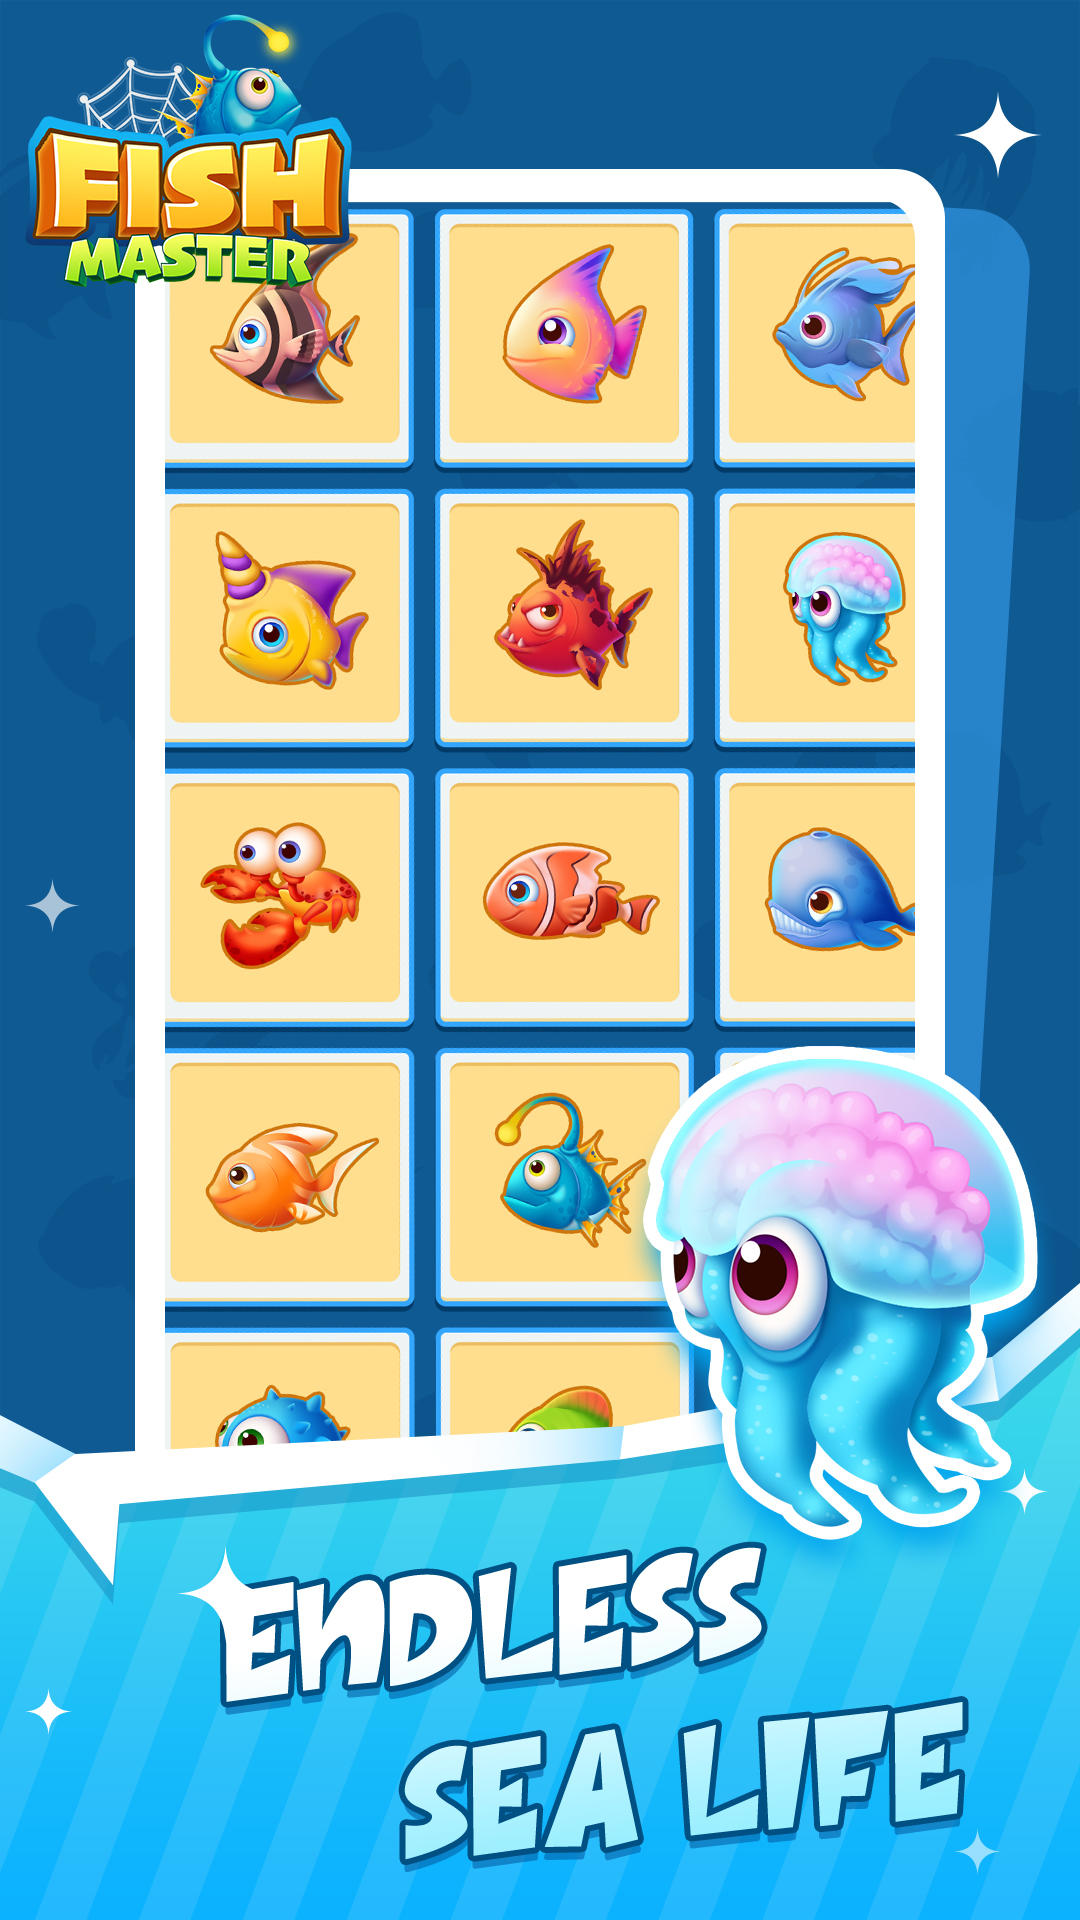 FishMaster screenshot game